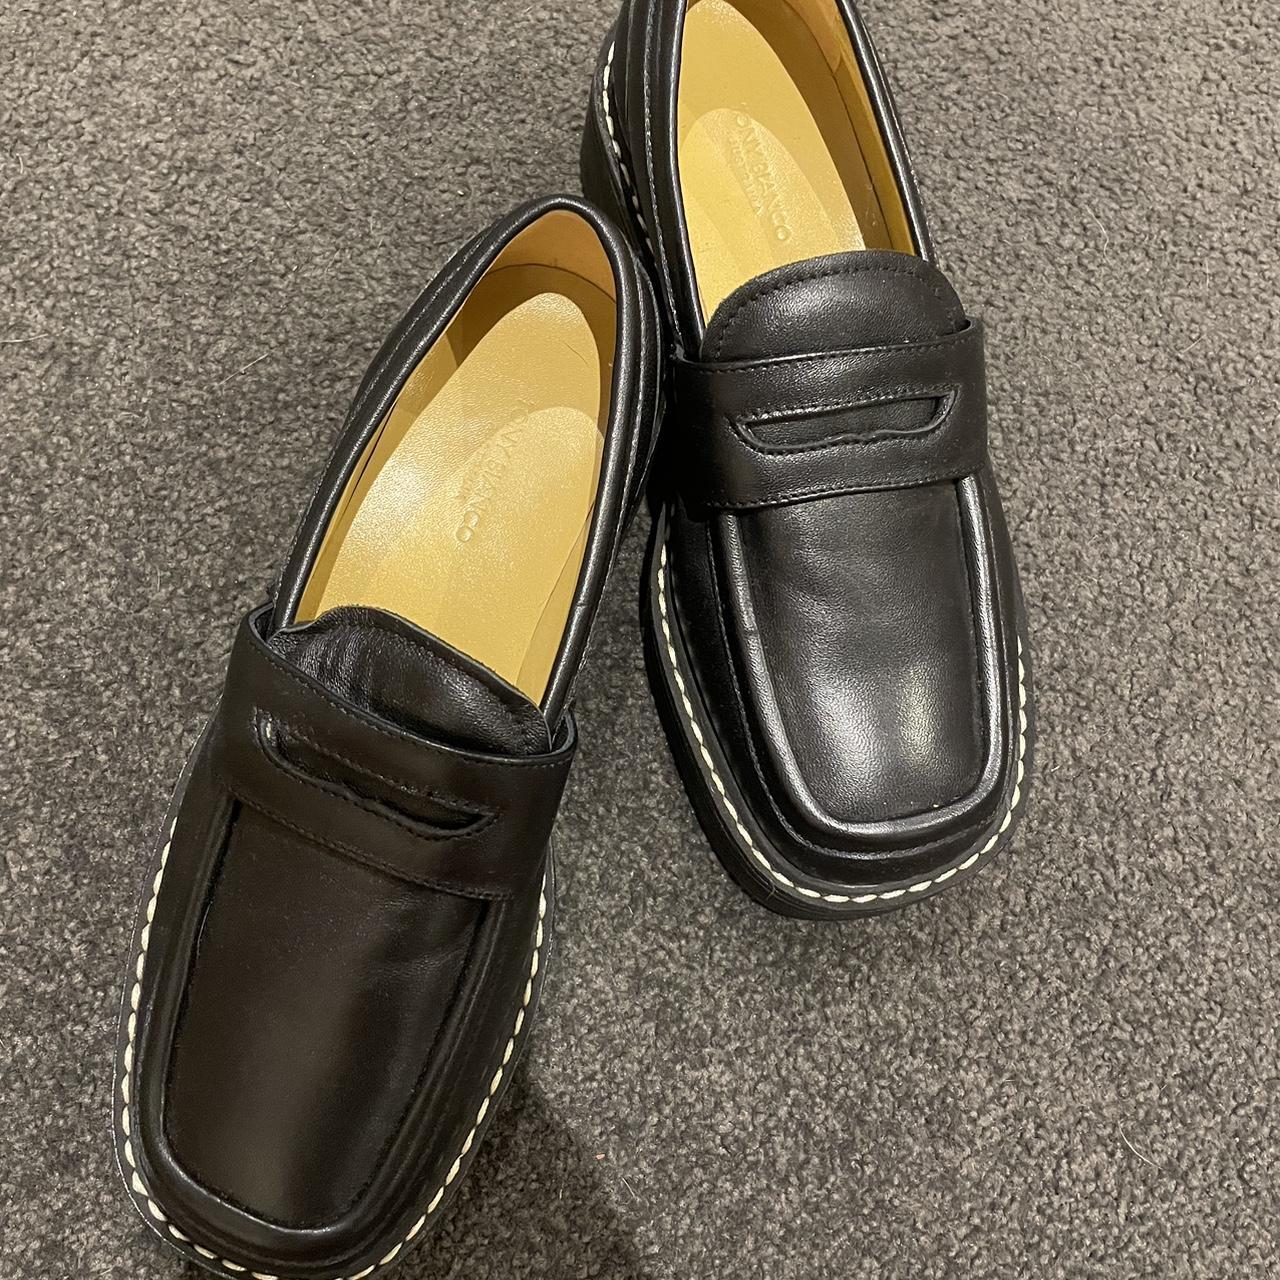 Tony Bianco Plato loafers black Size 6 1/2... - Depop